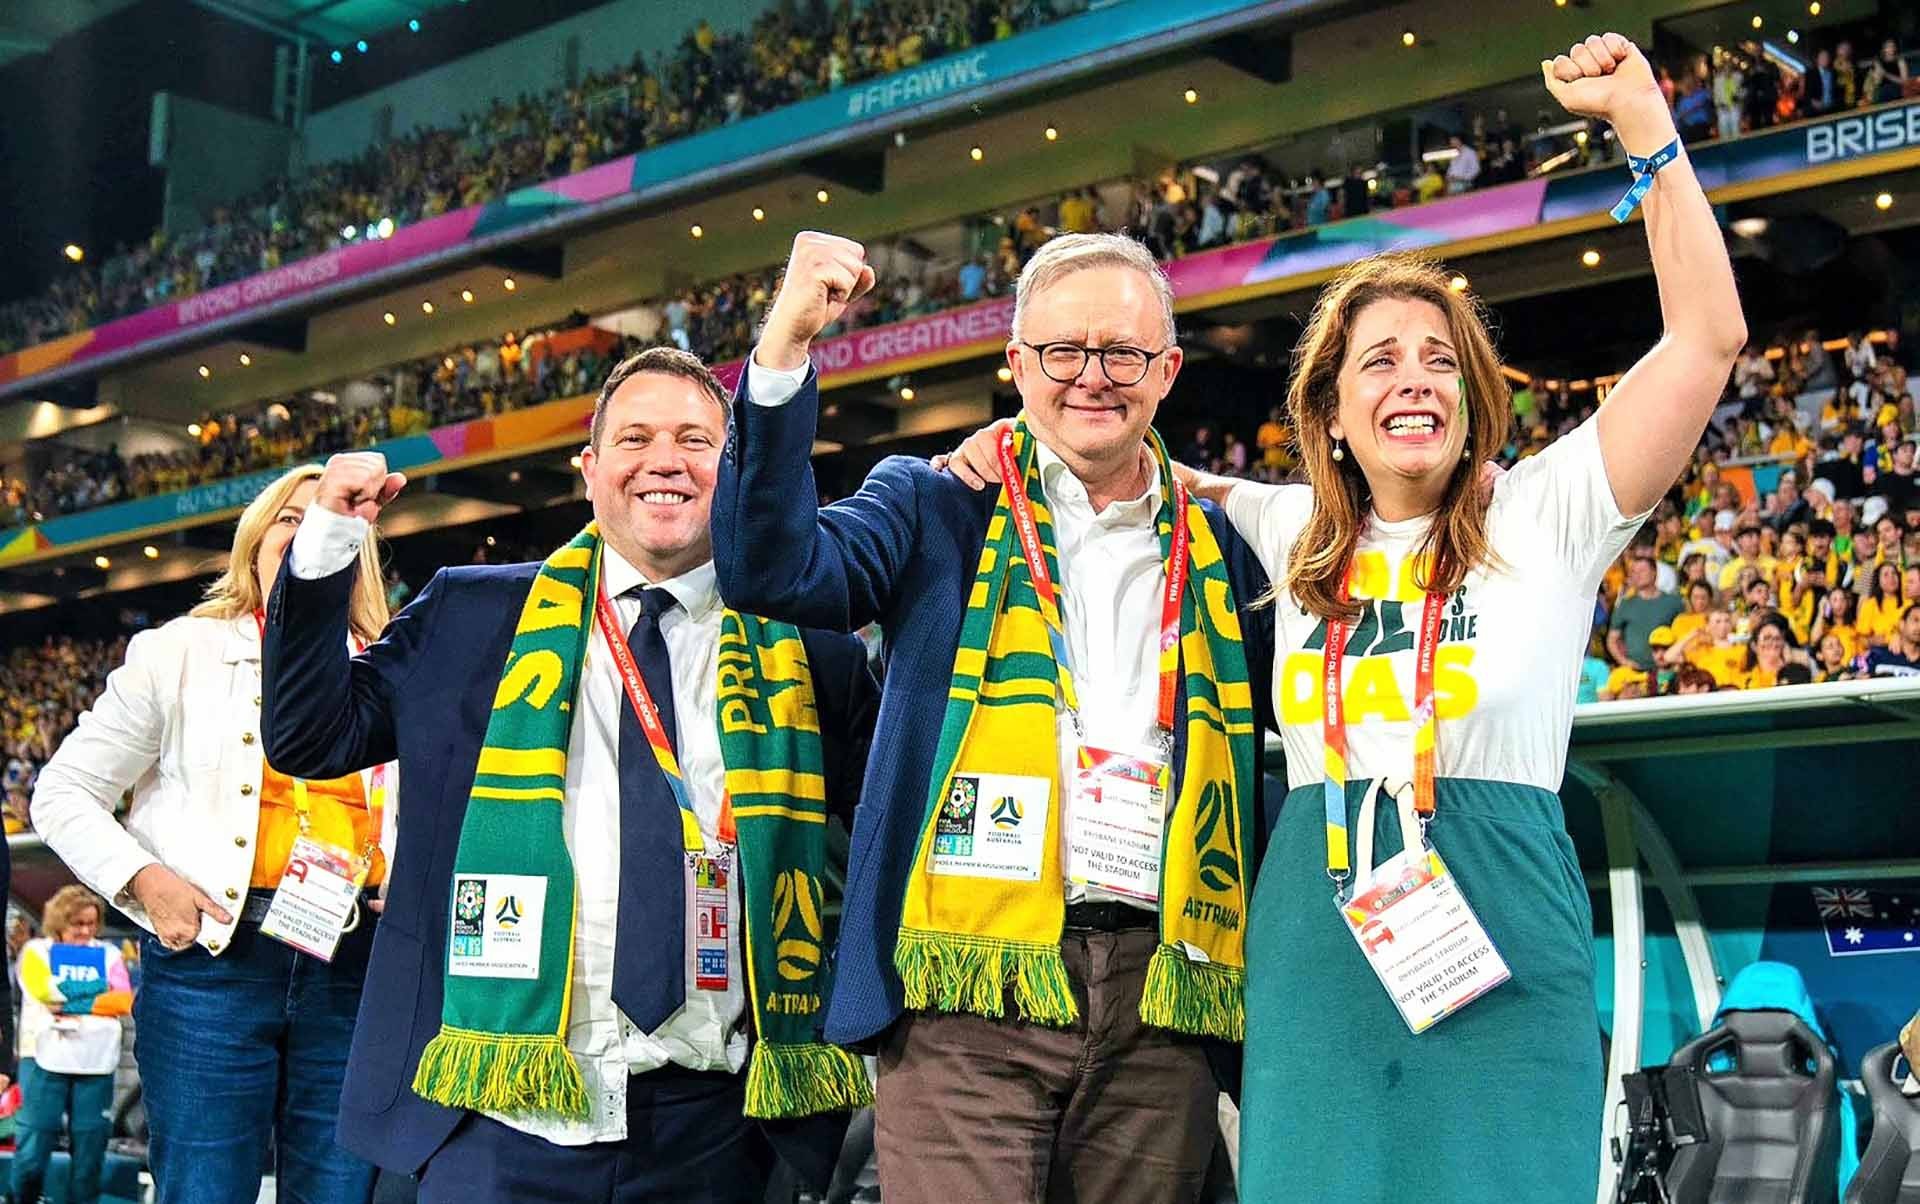 Thủ tướng Australia Anthony Albanese (giữa) và Bộ trưởng Thể thao Anika Wells (phải) ăn mừng trước chiến thắng của đội tuyển nữ Australia trong trận đấu bóng đá nữ với đội tuyển Pháp tại World Cup 2023 diễn ra ở Sydney. (Nguồn:Anthony Albanese/Twitter)